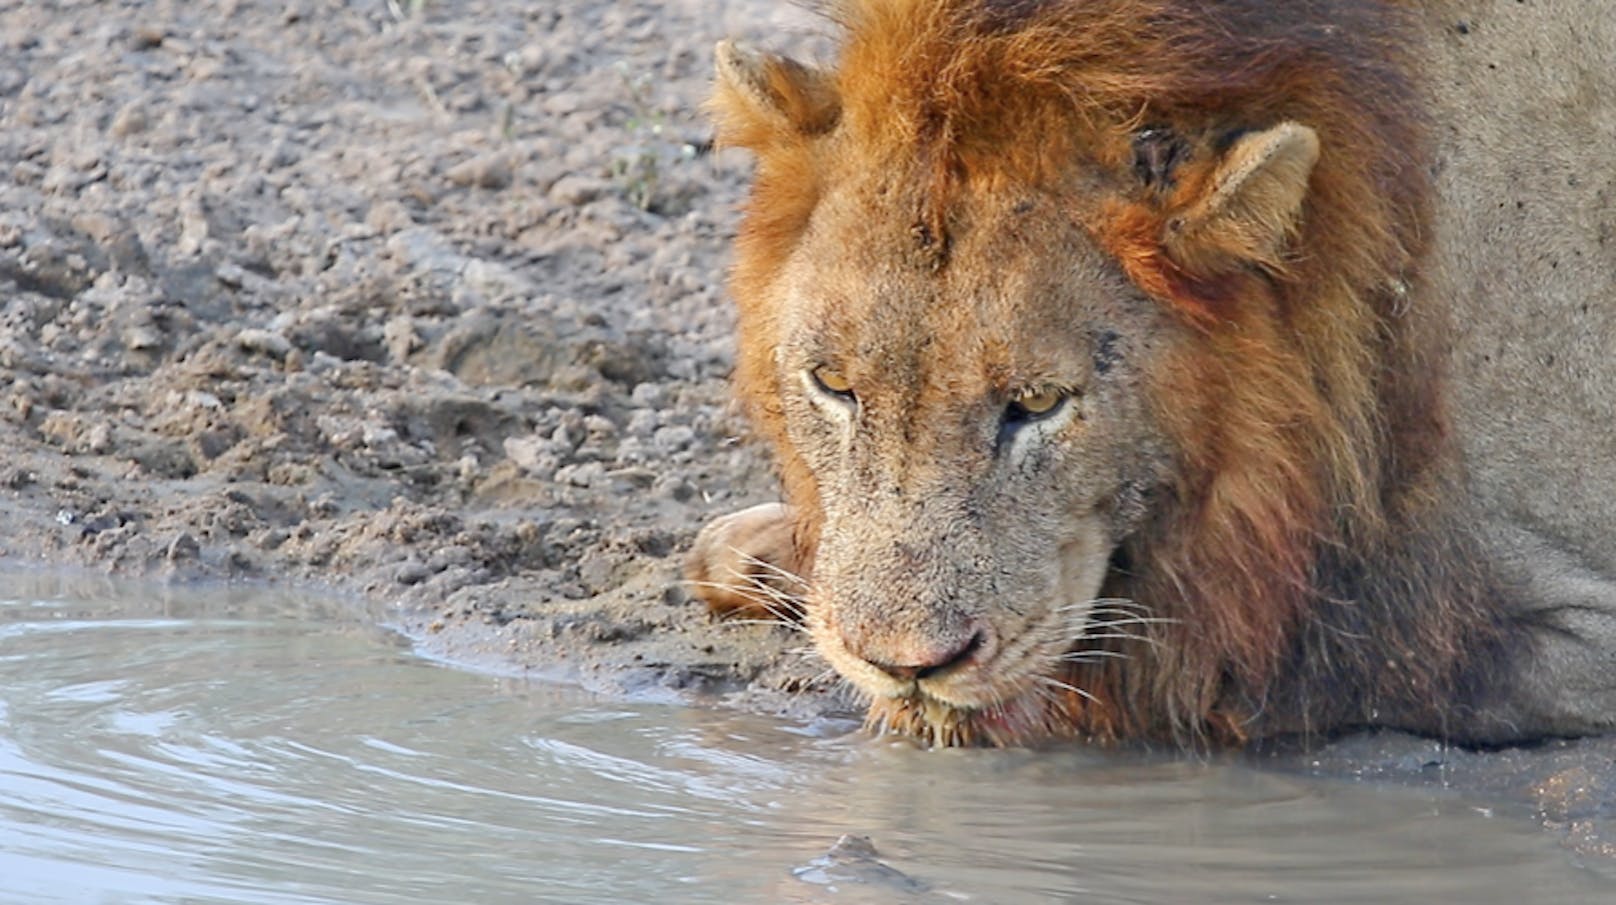 Als der König der Tiere seinen Durst ausgerechnet an ihrem Wasserloch stillen möchte, zeigt sie ihm, wer hier der Boss ist.